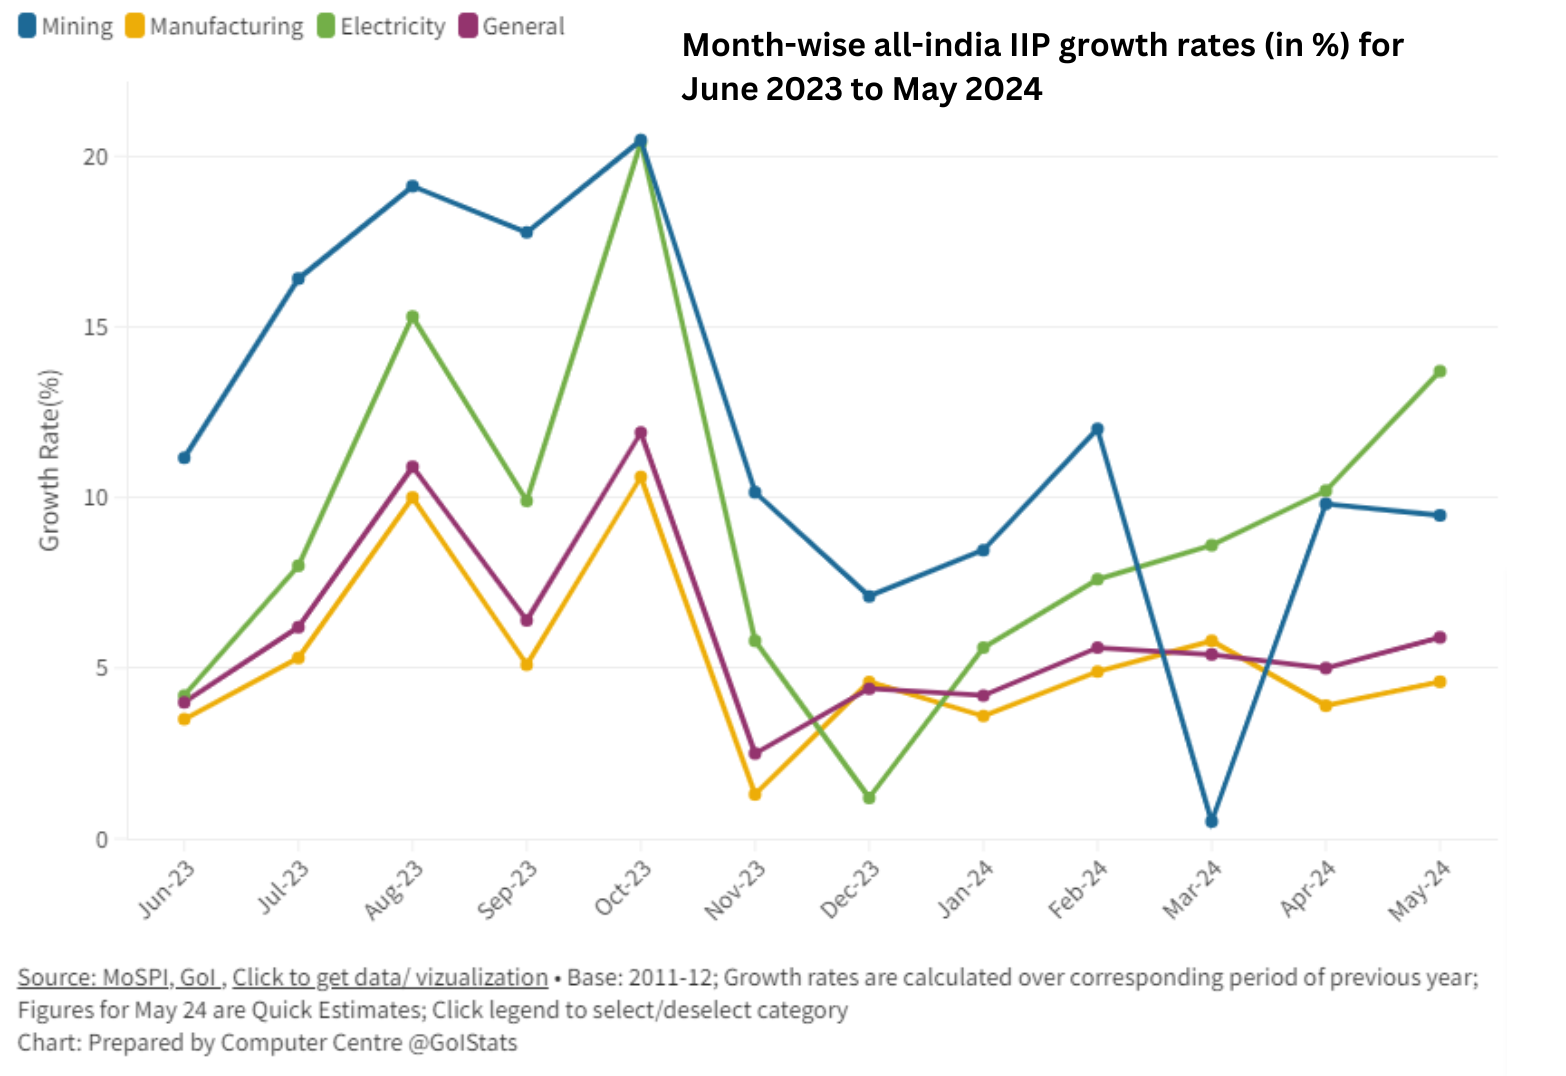 Growth rate as per IIP